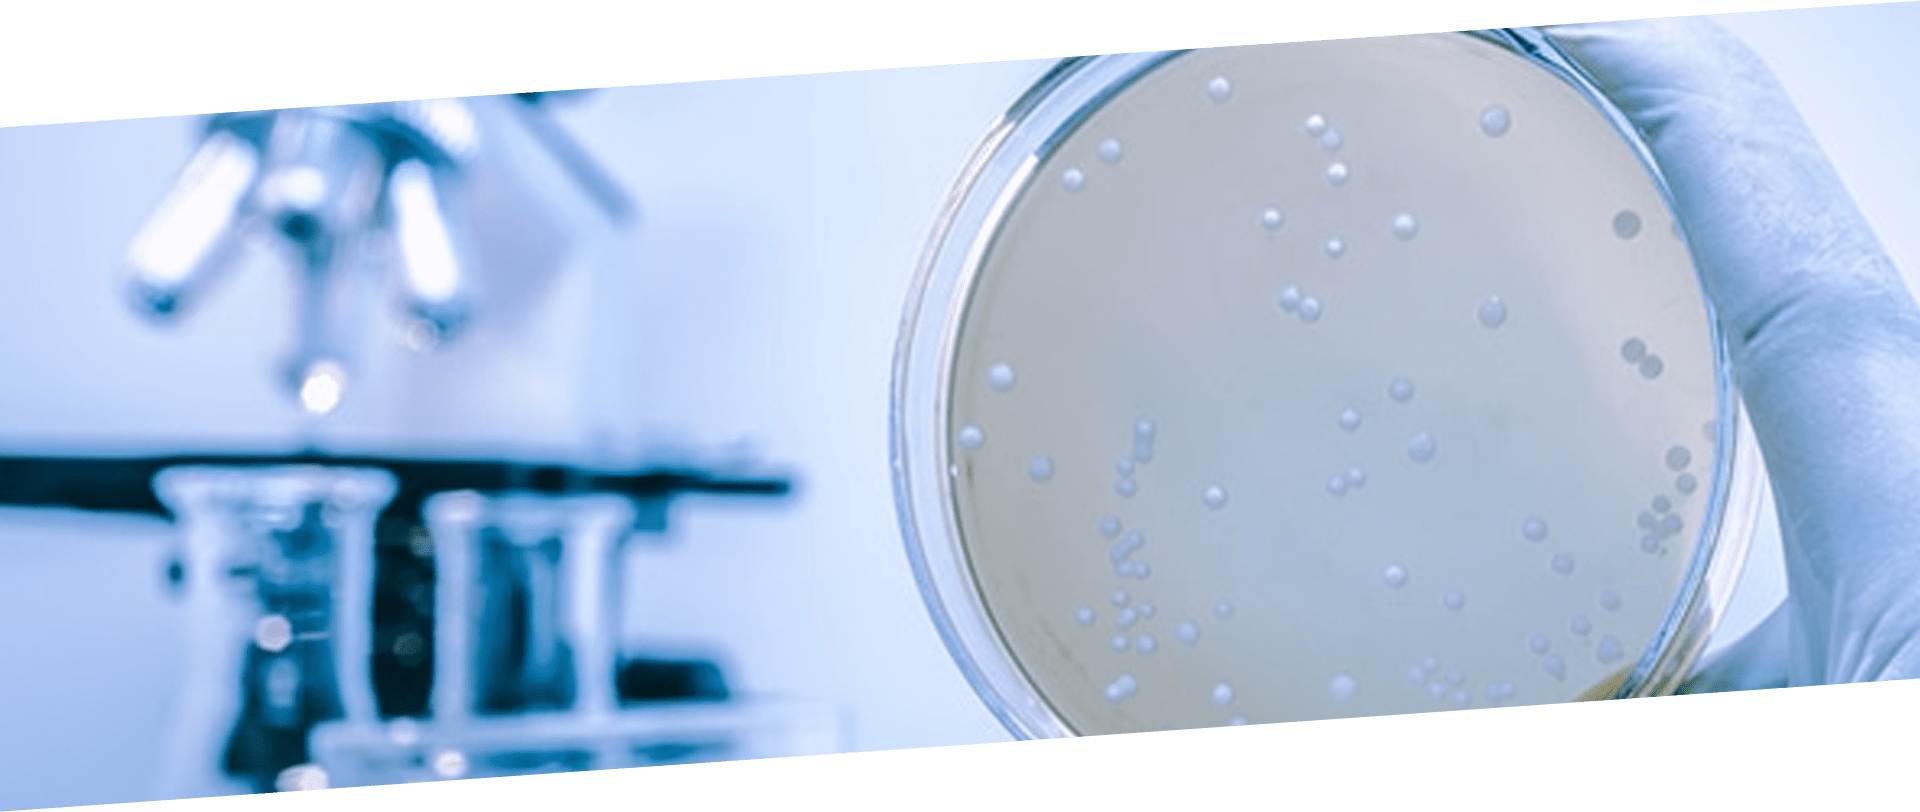 Monitoreo y análisis de agua: Es fundamental realizar análisis microbiológicos periódicos para evaluar la presencia de Legionella pneumophila y tomar las medidas necesarias en caso de detección